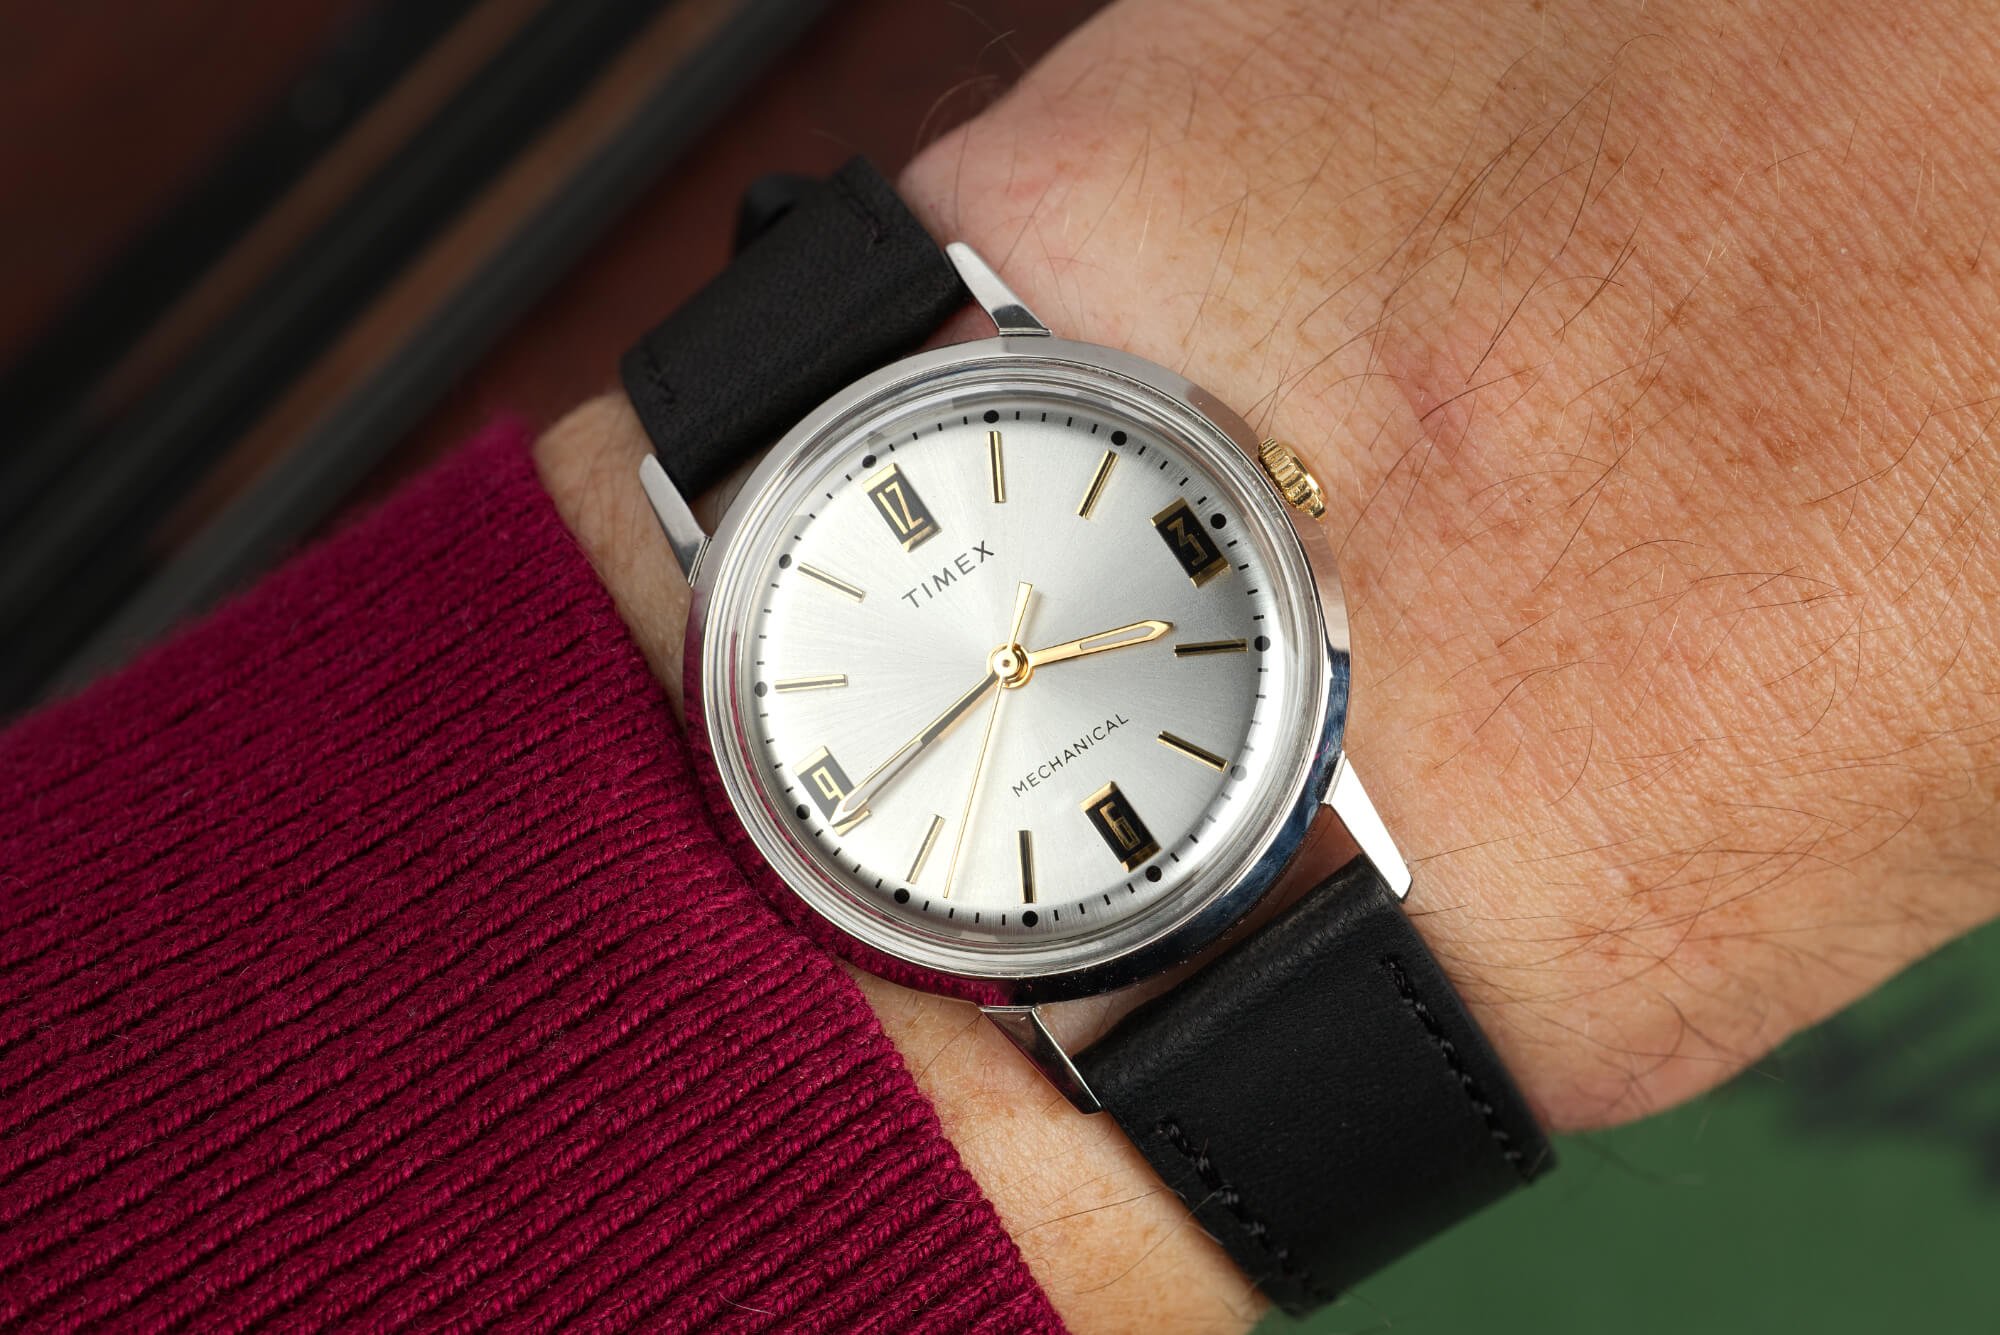 Обзор часов: Timex Marlin с ручным заводом 34 мм